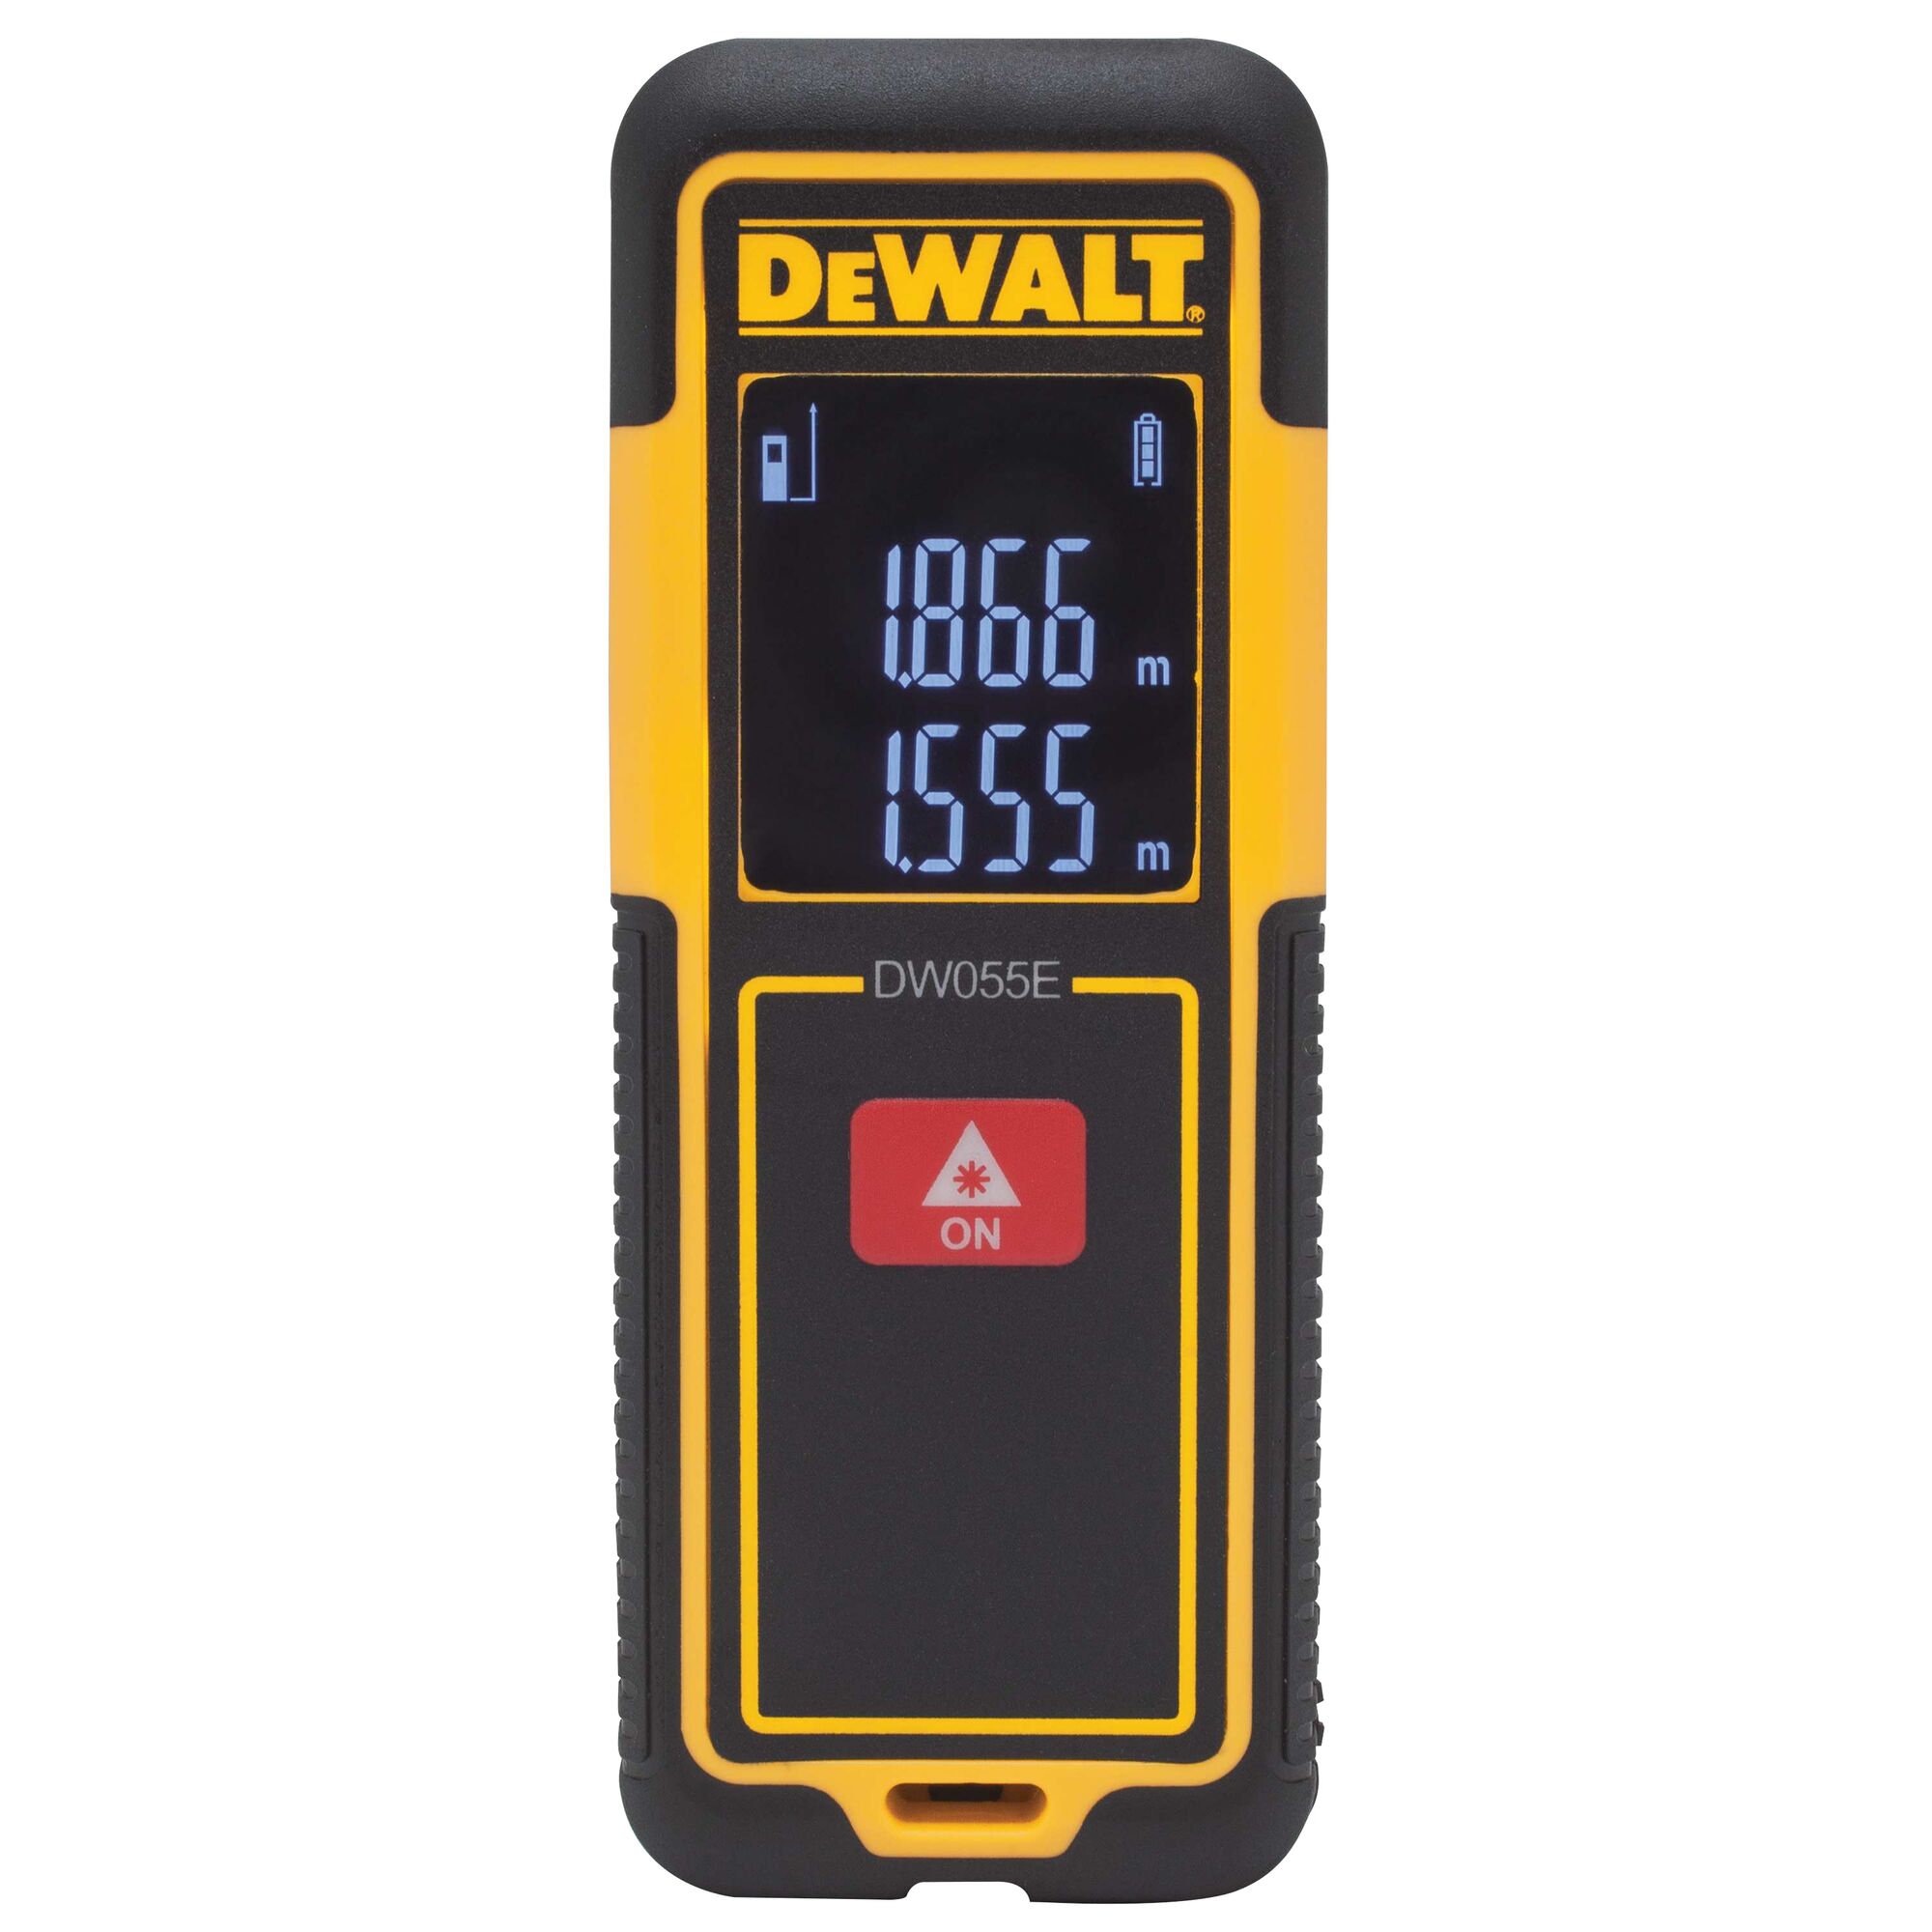 Details about   DEWALT DW065E Lightweight Laser Distance Measurer 